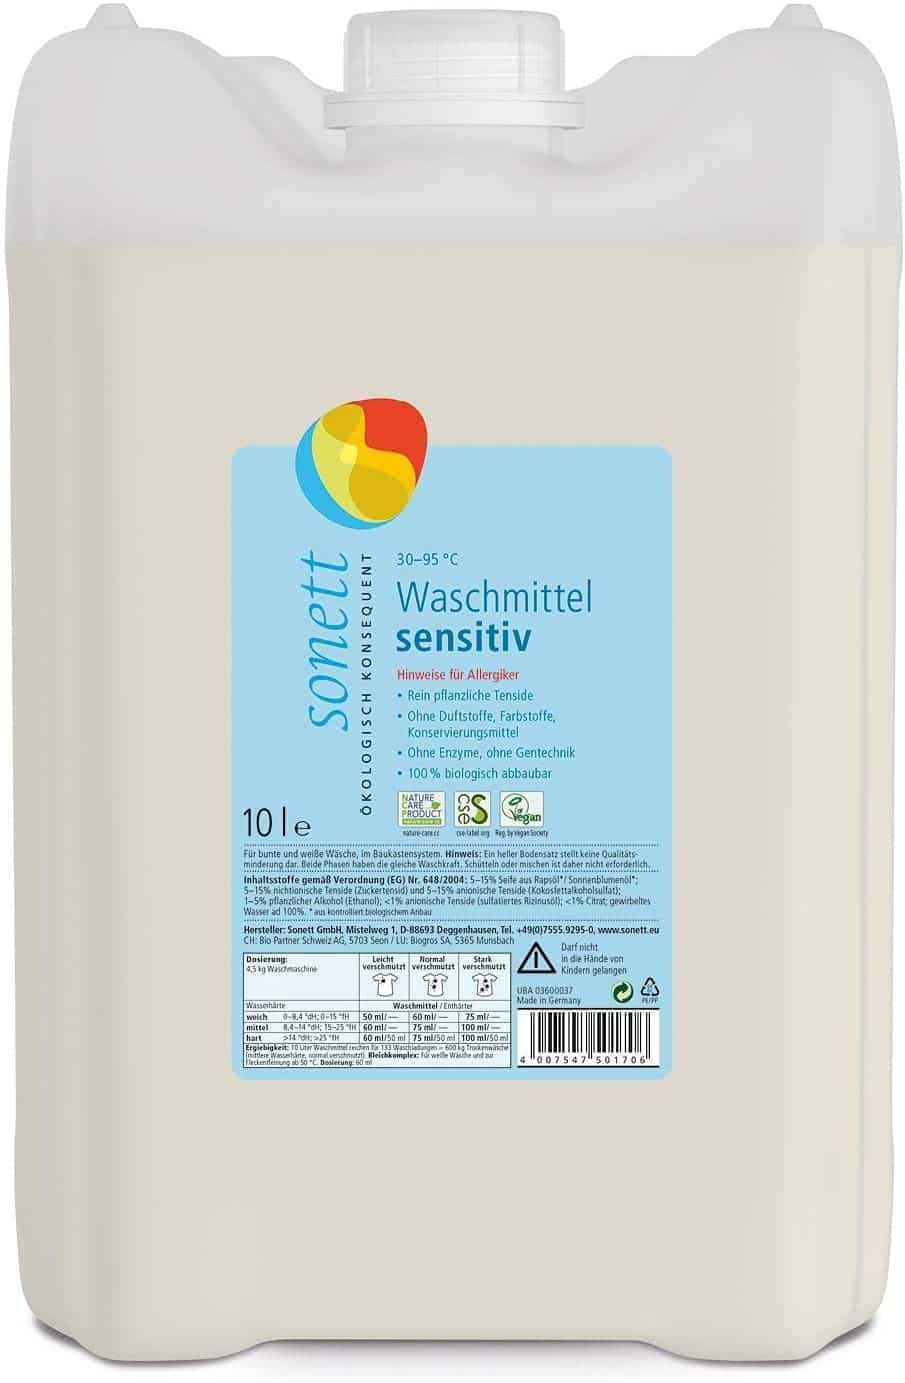 enzymfreies waschmittel - Waschmittel Sensitiv von Sonett.